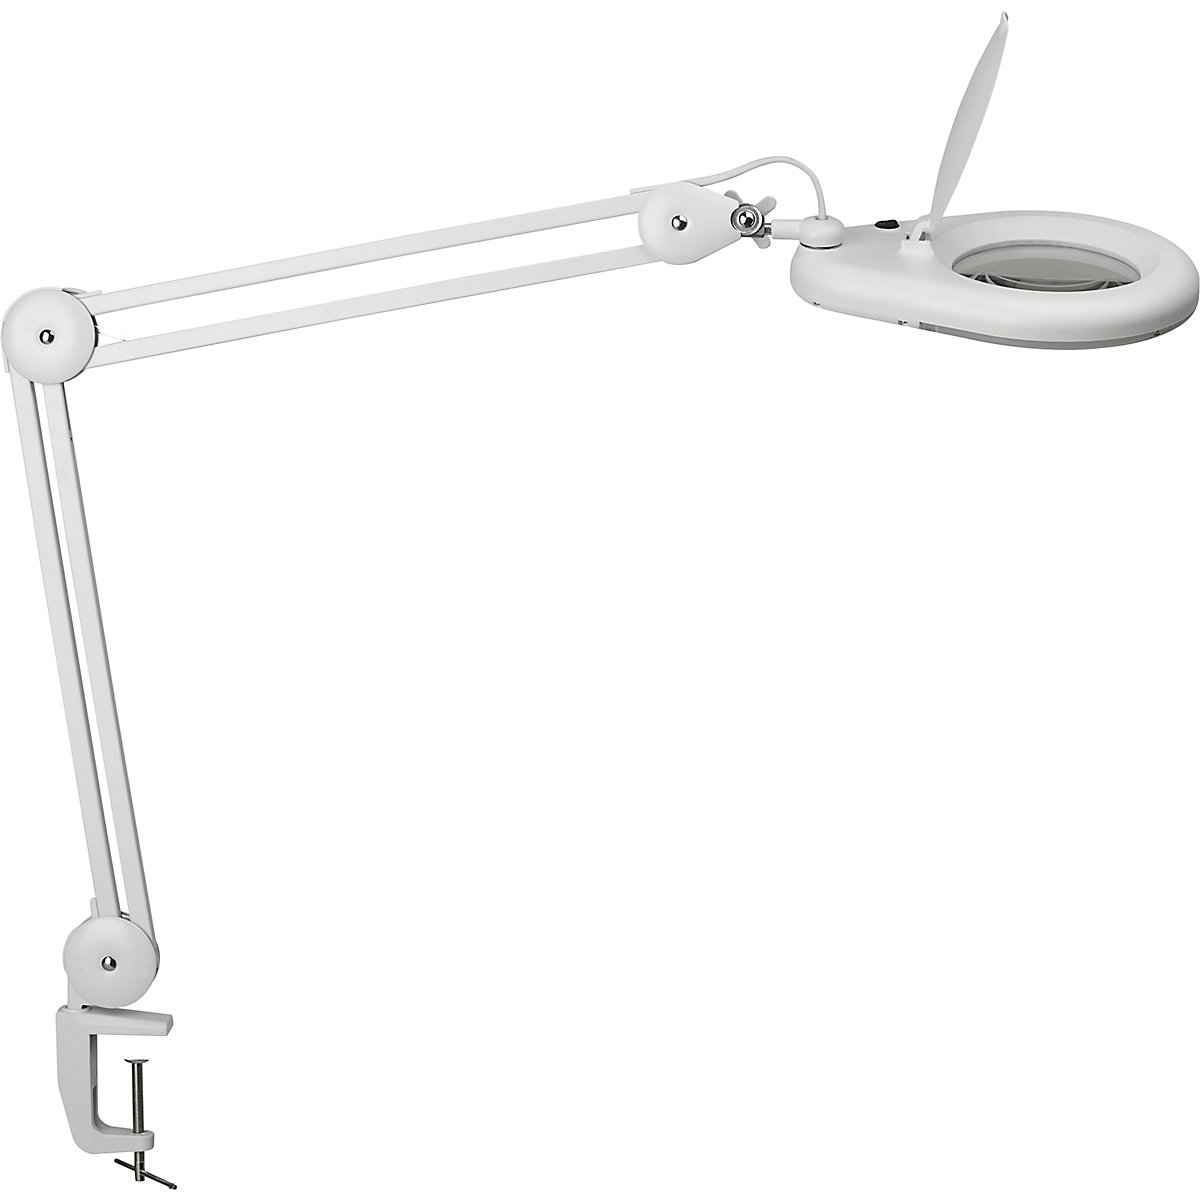 MAULviso LED magnifying lamp - MAUL